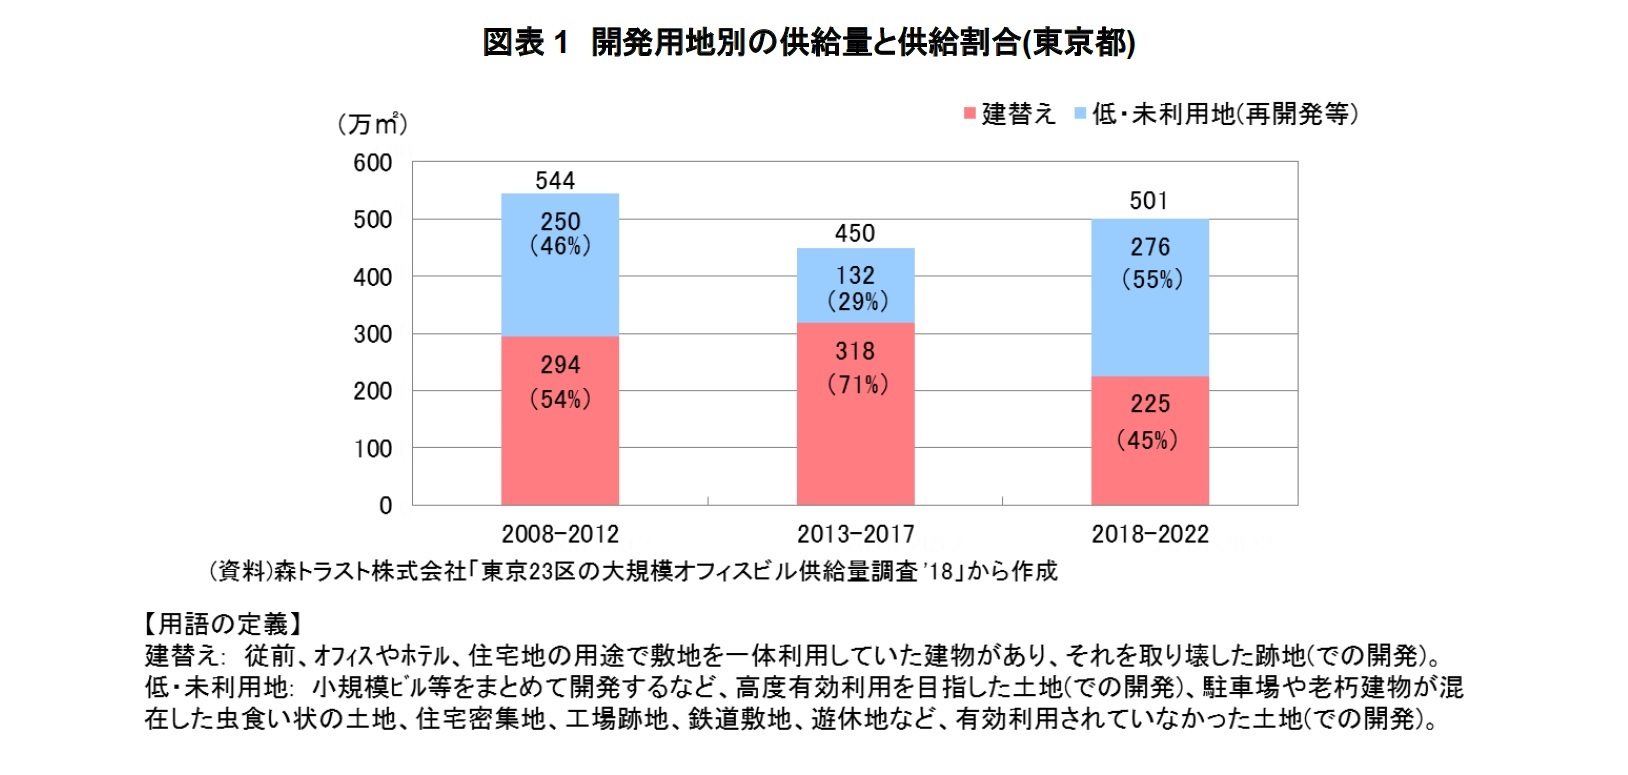 図表１　開発用地別の供給量と供給割合(東京都)